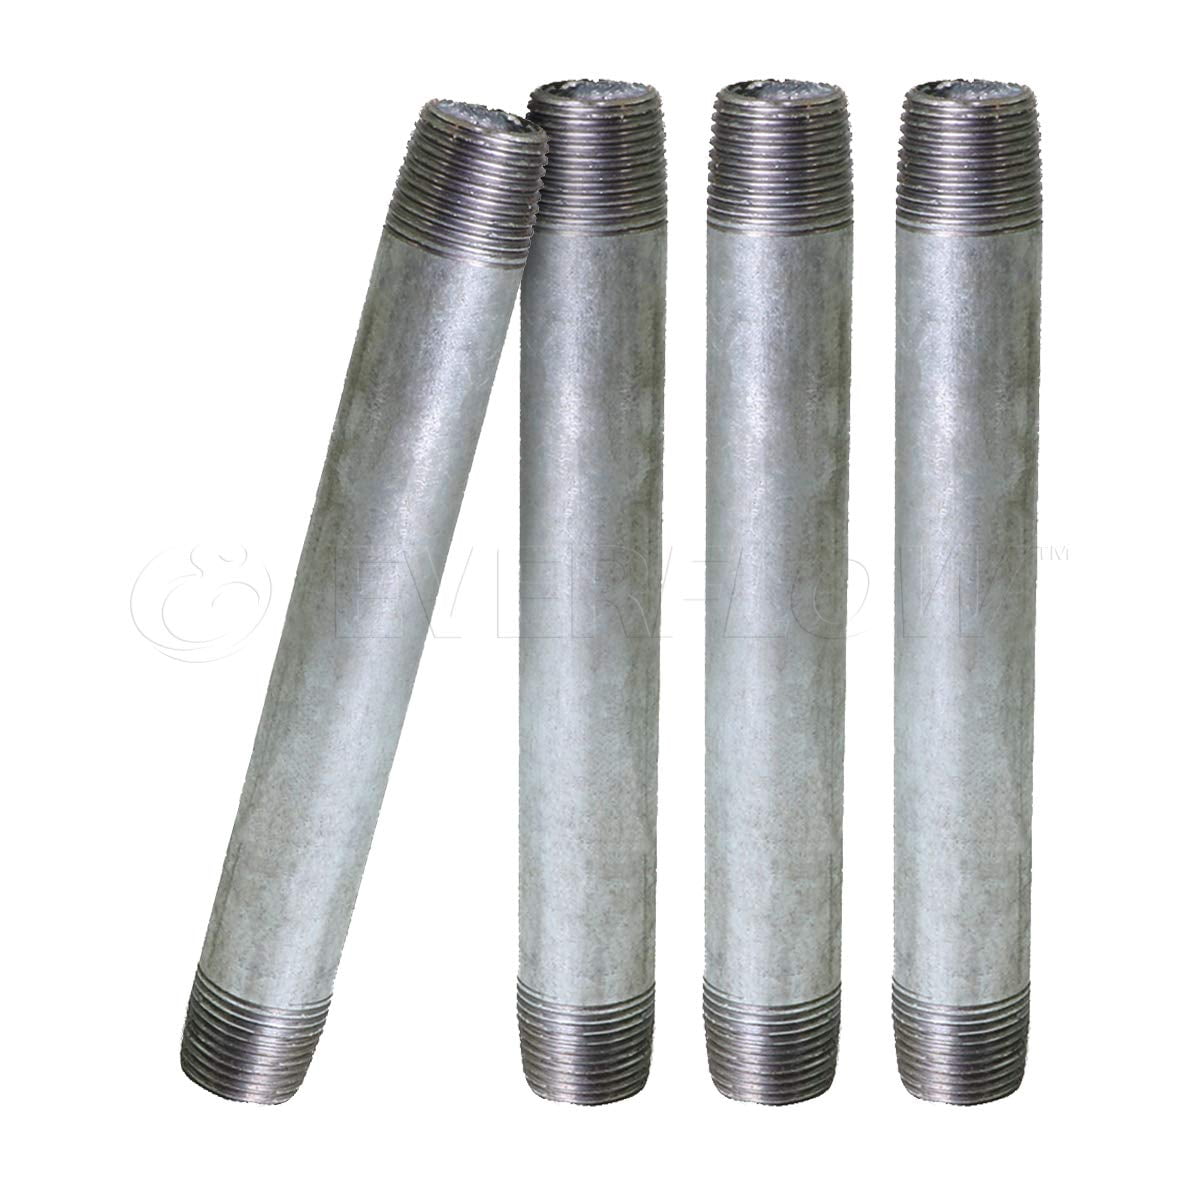 6 Pack 1/2” Pre-Cut Black Metal Pipe 1/2" × 30", Black Industrial Steel 